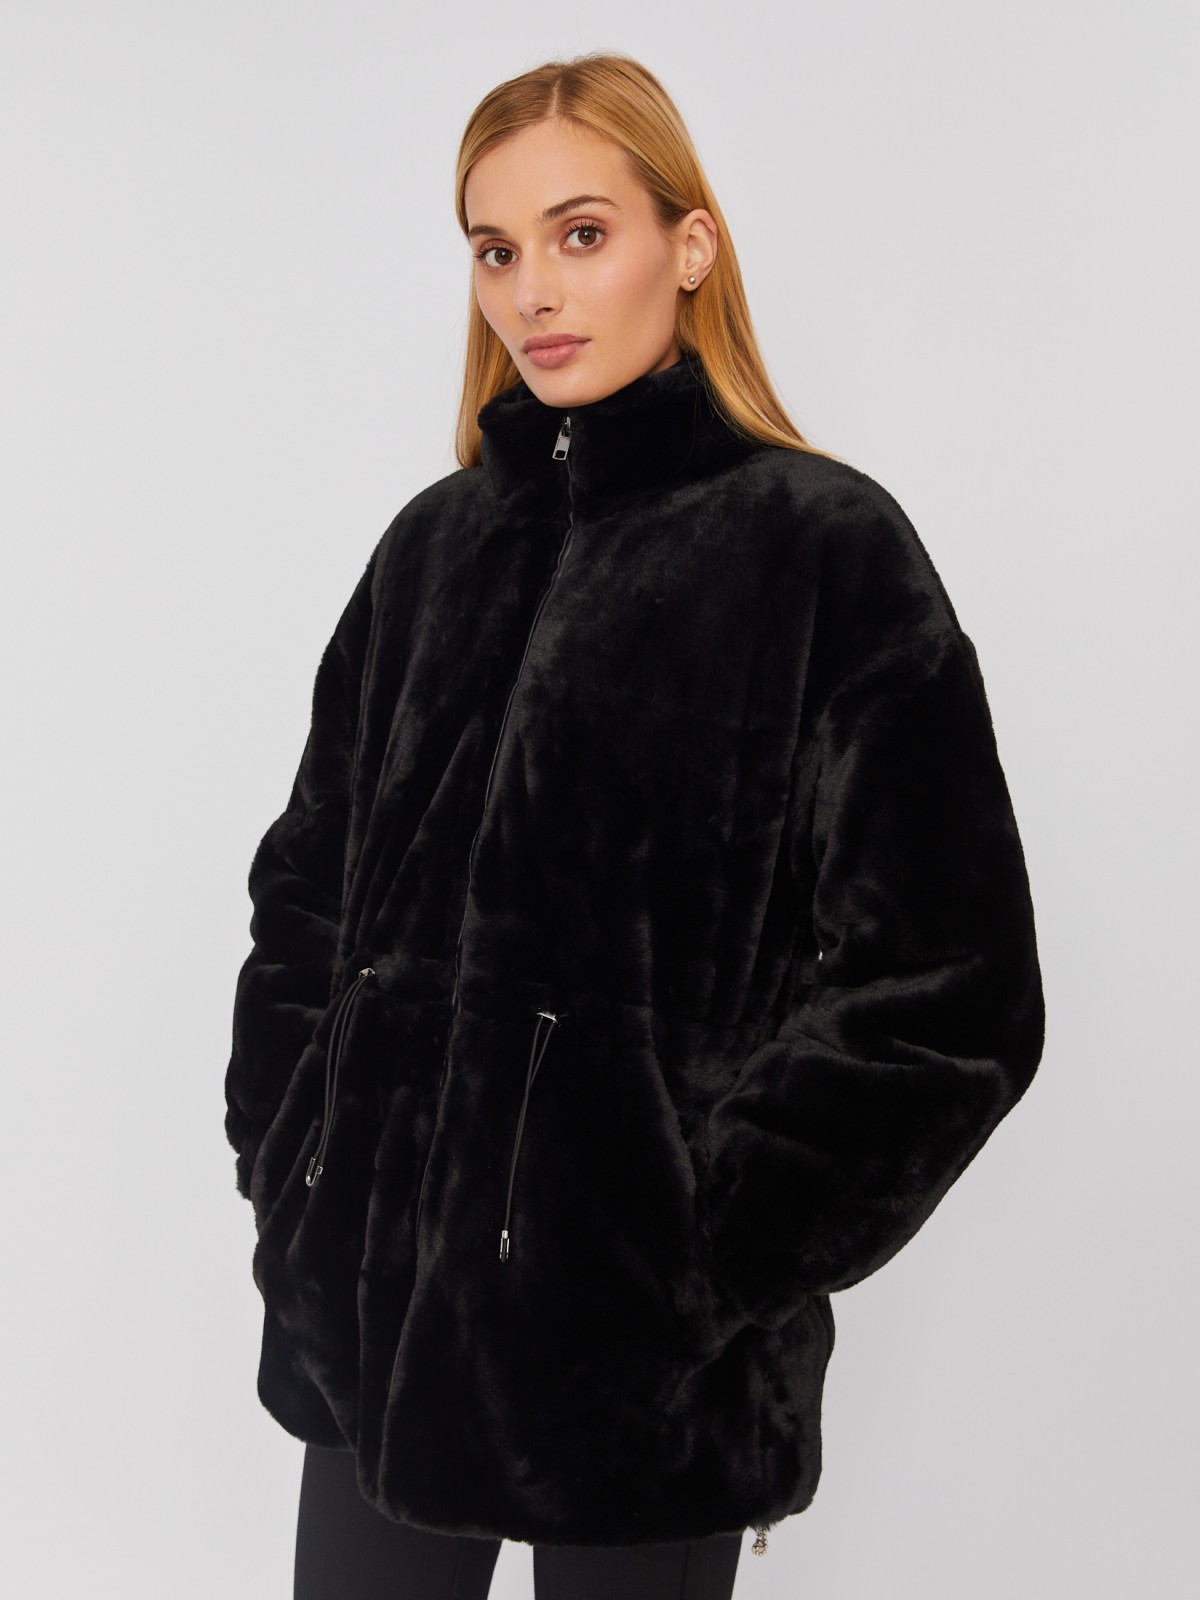 Тёплая куртка-шуба из искусственного меха на синтепоне с регулируемой талией zolla 023335550104, цвет черный, размер S - фото 3